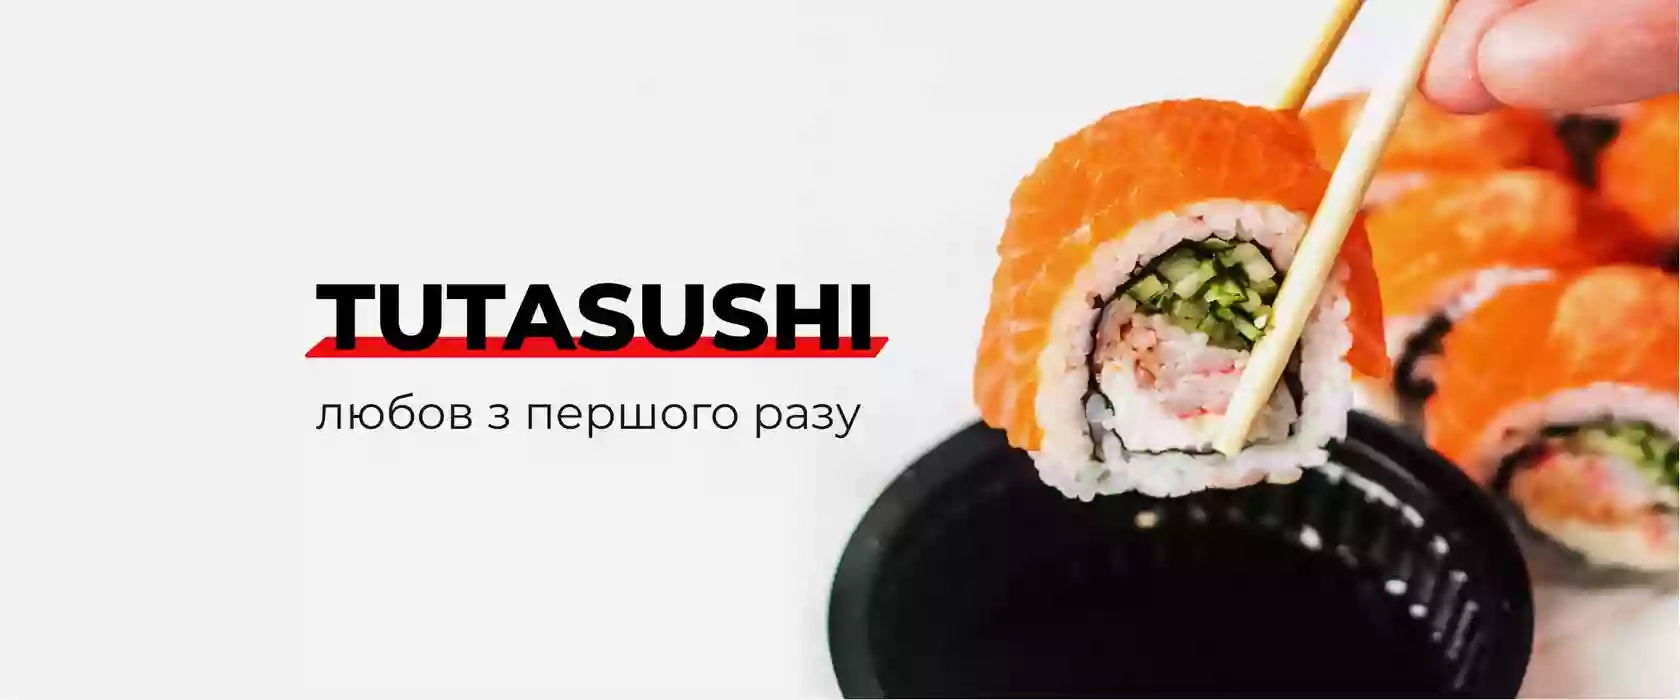 Доставка суши TUTA SUSHI (Позняки)